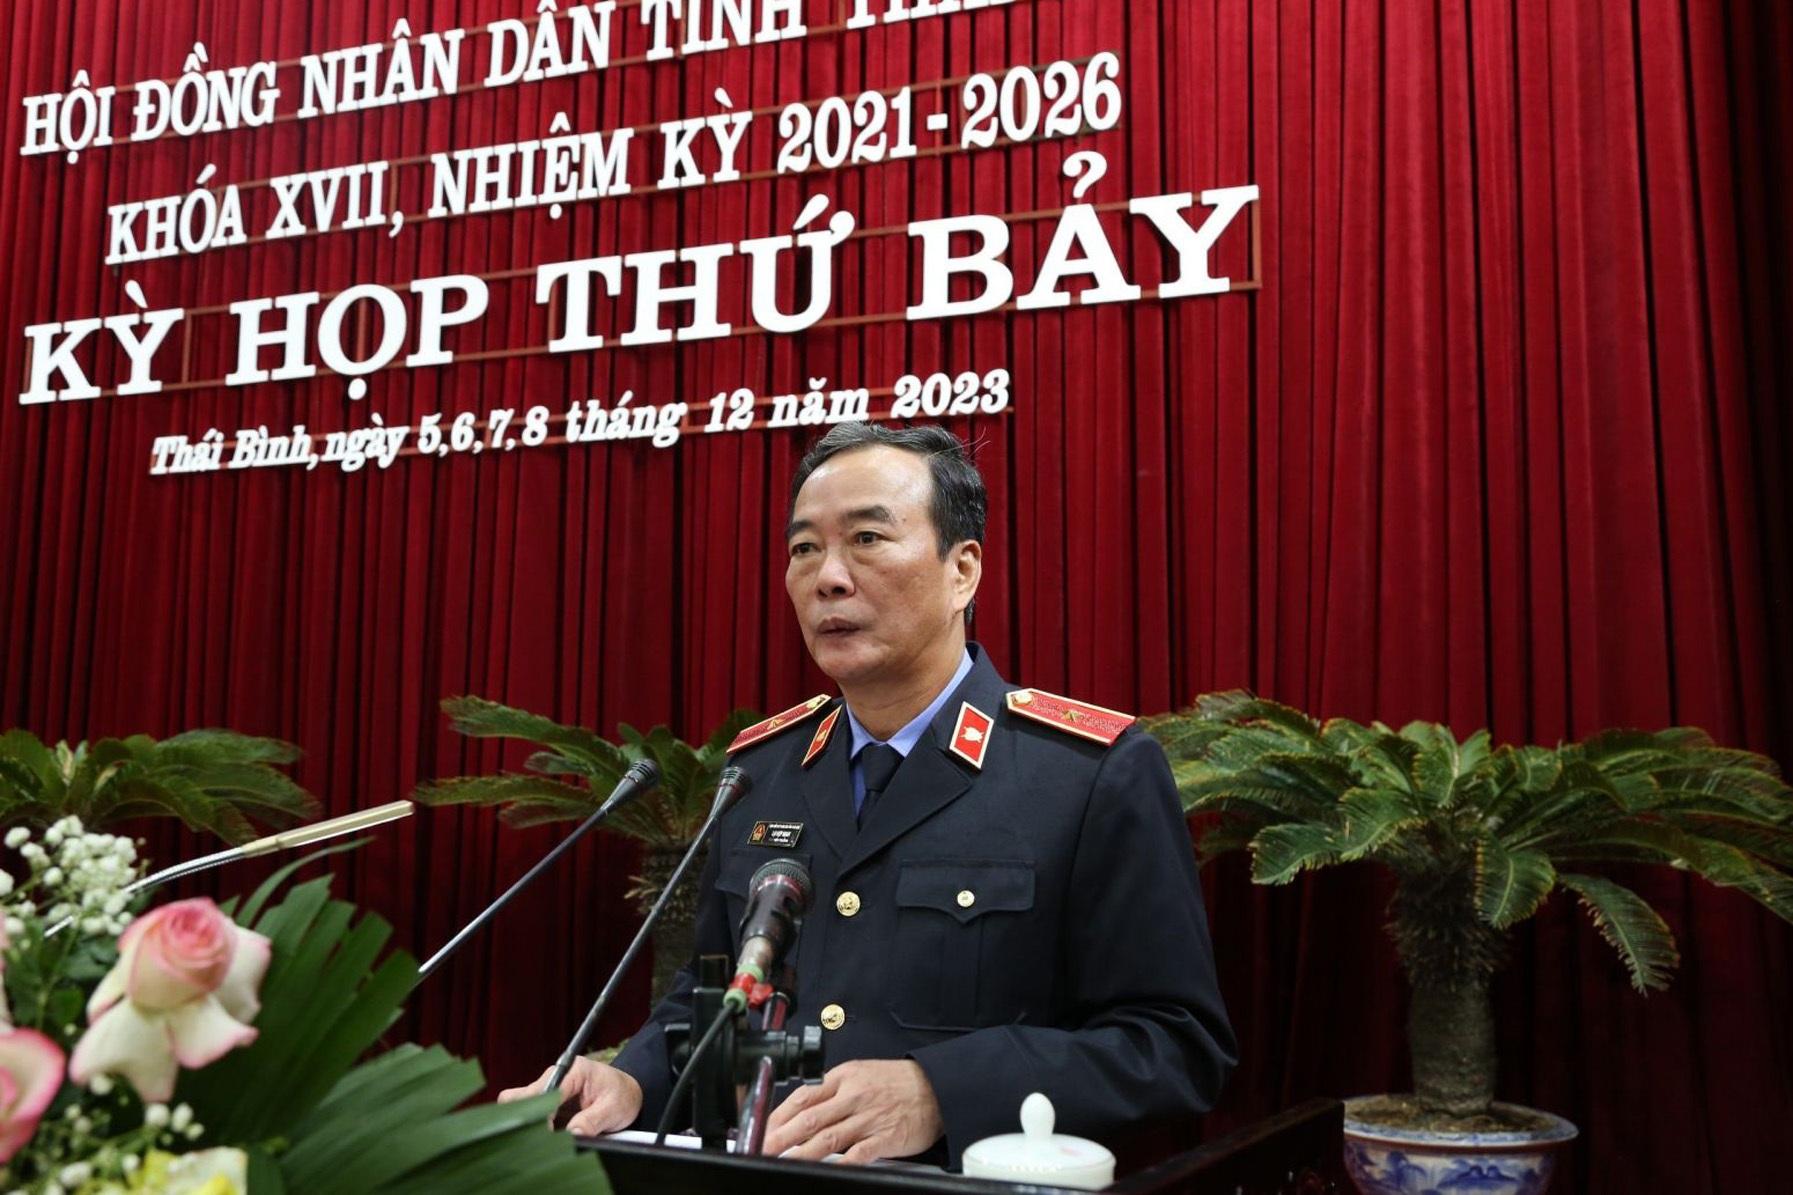 Viện trưởng VKSND tỉnh Thái Bình thông tin vụ bắt ông Lưu Bình Nhưỡng - 1